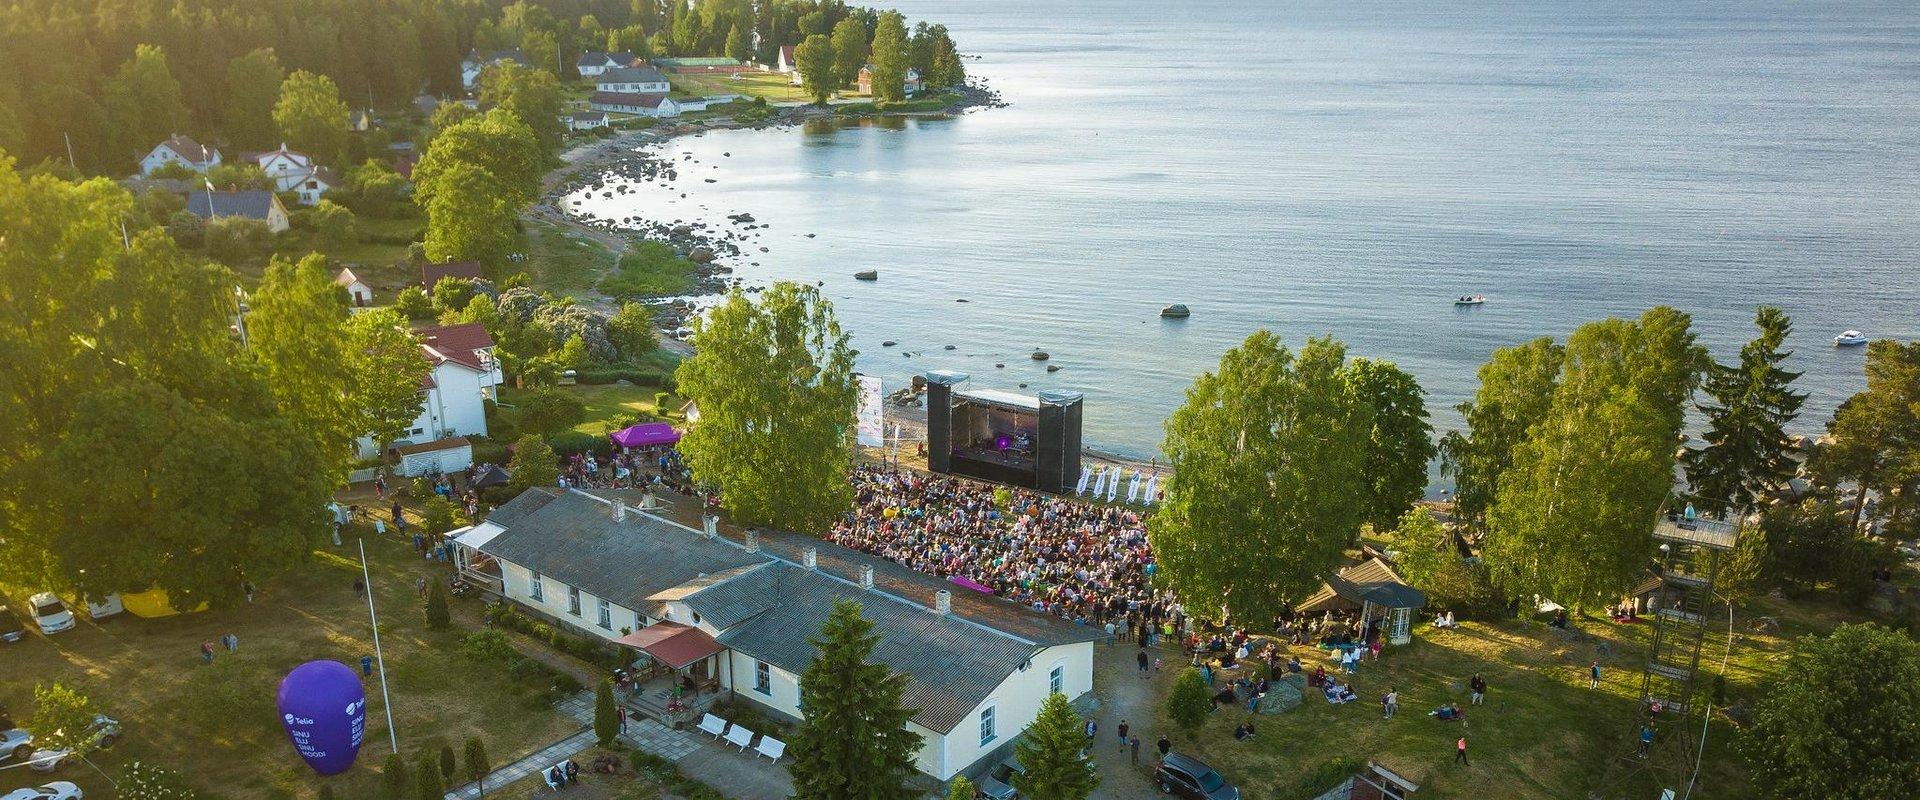 Viru Folk, ein für die ganze Familie gedachtes Festival nordischer Musik, hat bereits seit 2008 den Zuschauern viel Freude und tolle musikalische Erle